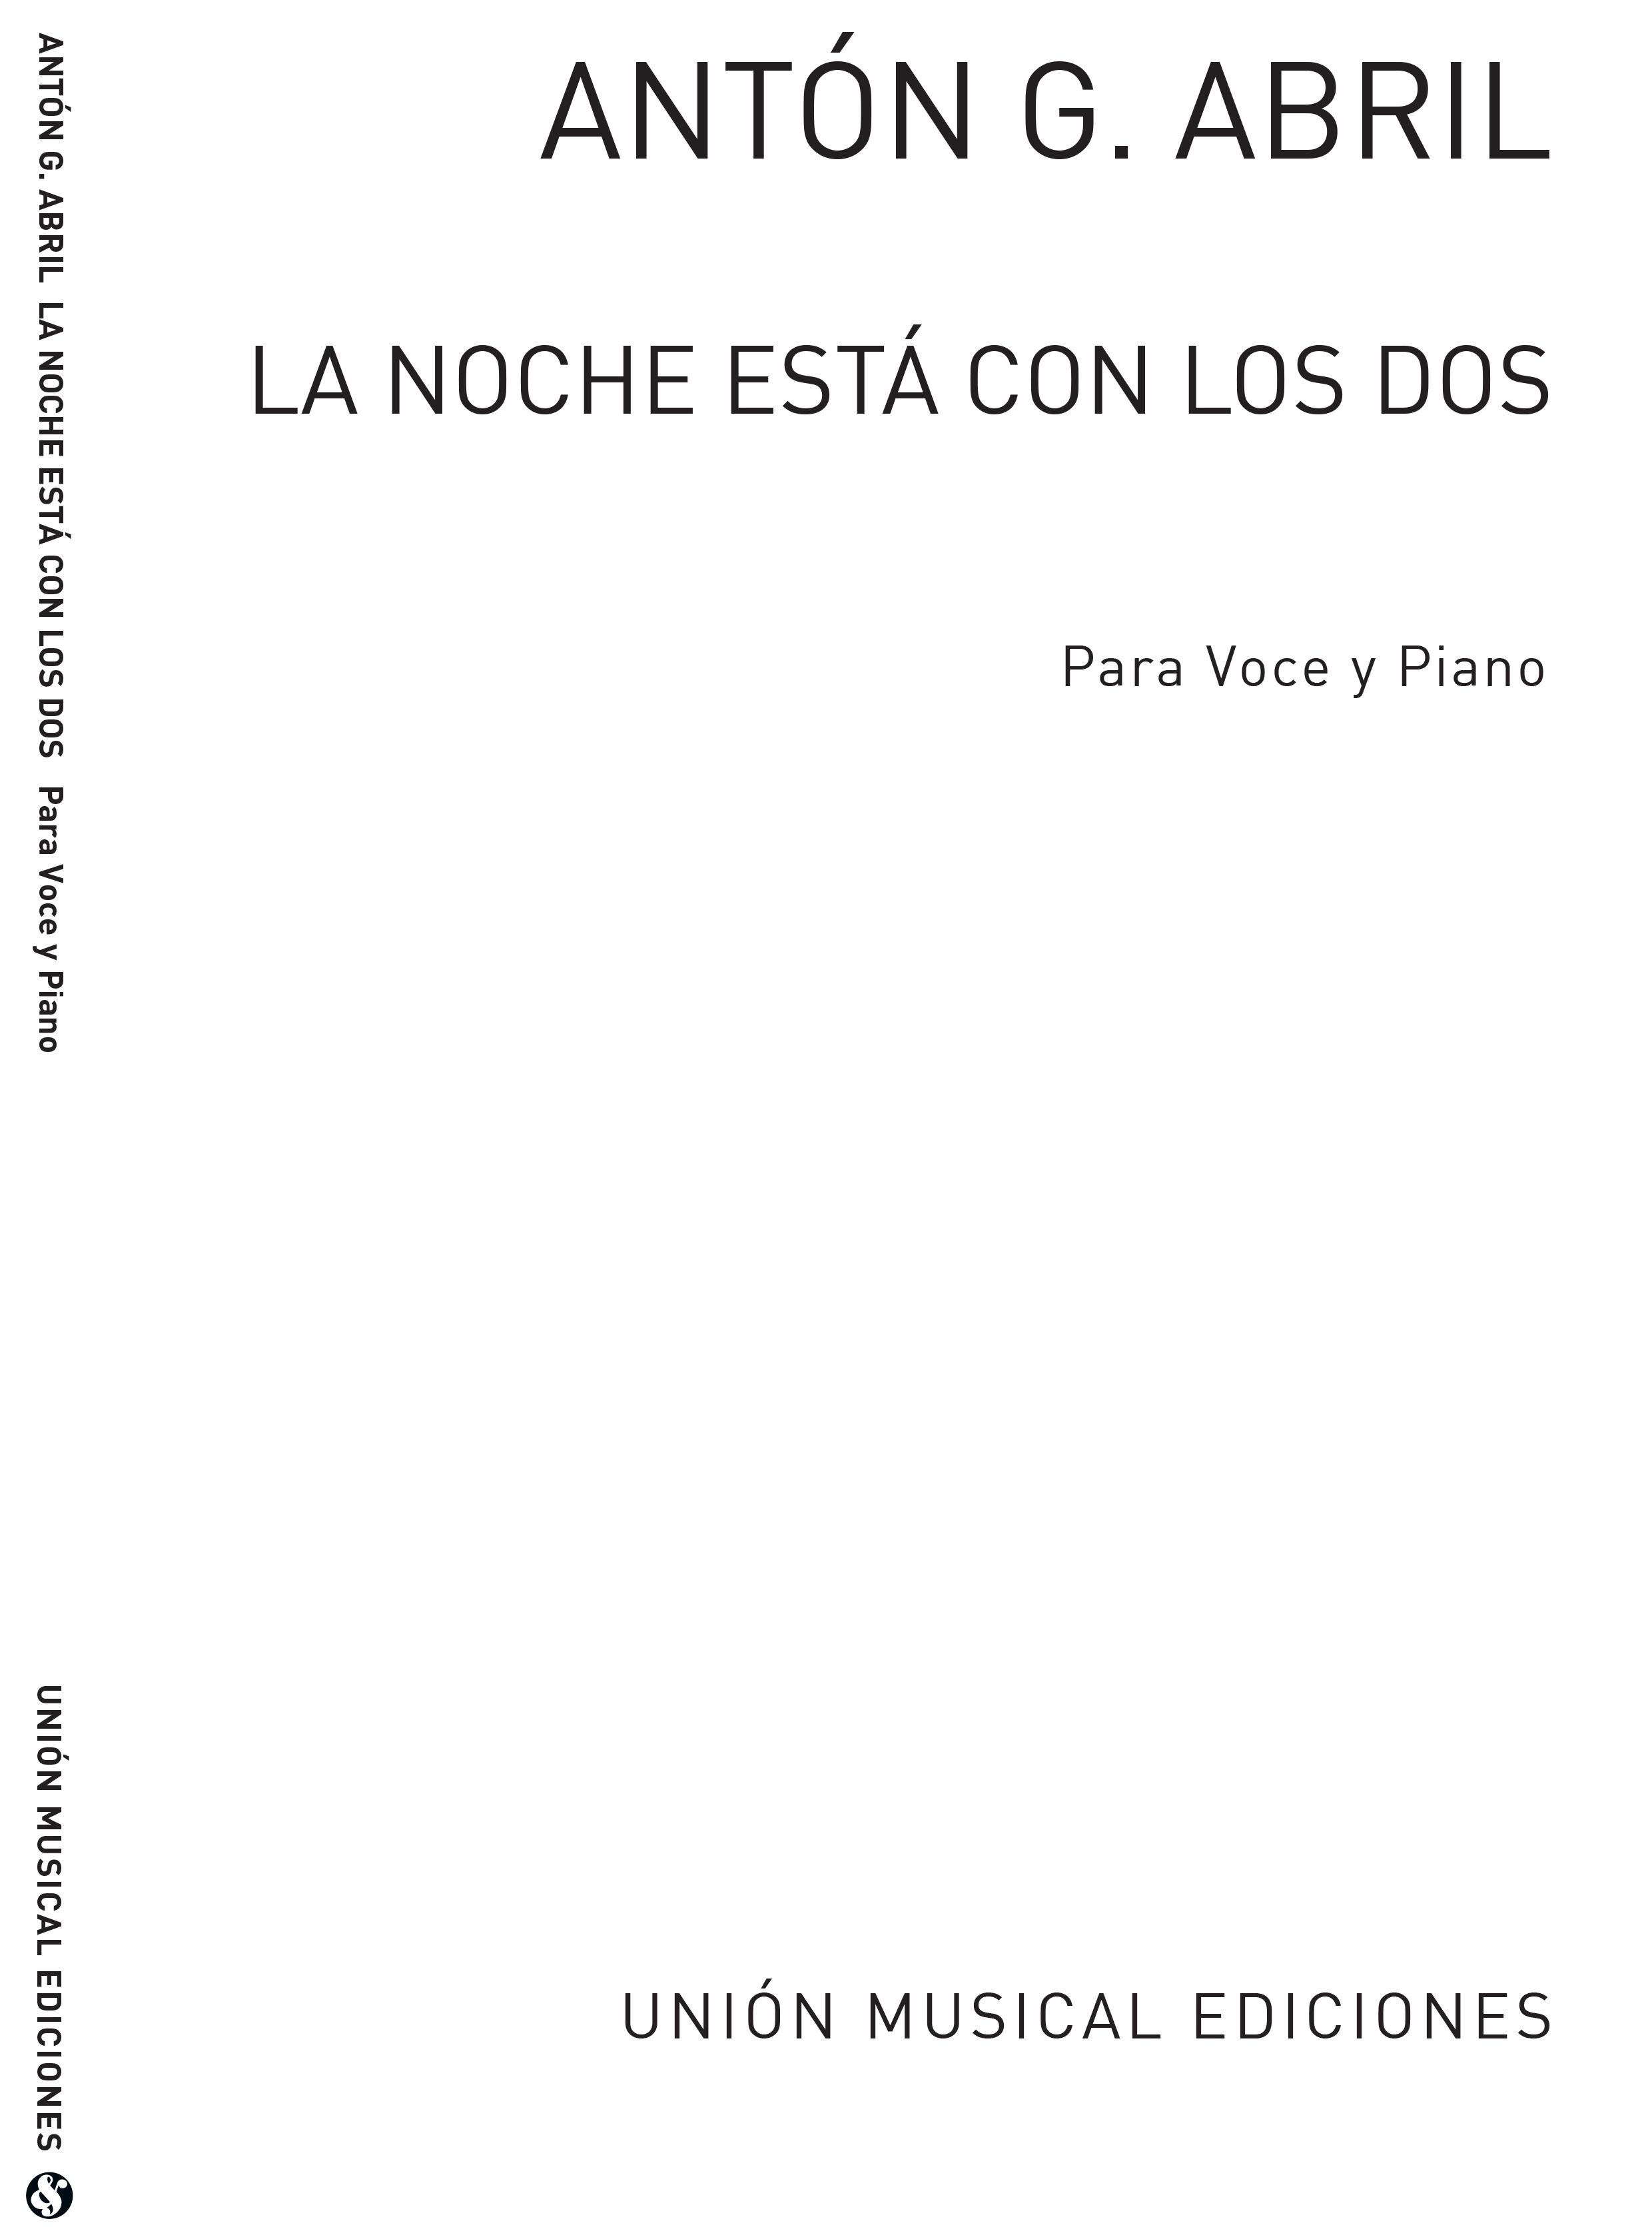 Anton Garcia Abril: La Noche Est Con Los Dos (Voice/Piano)